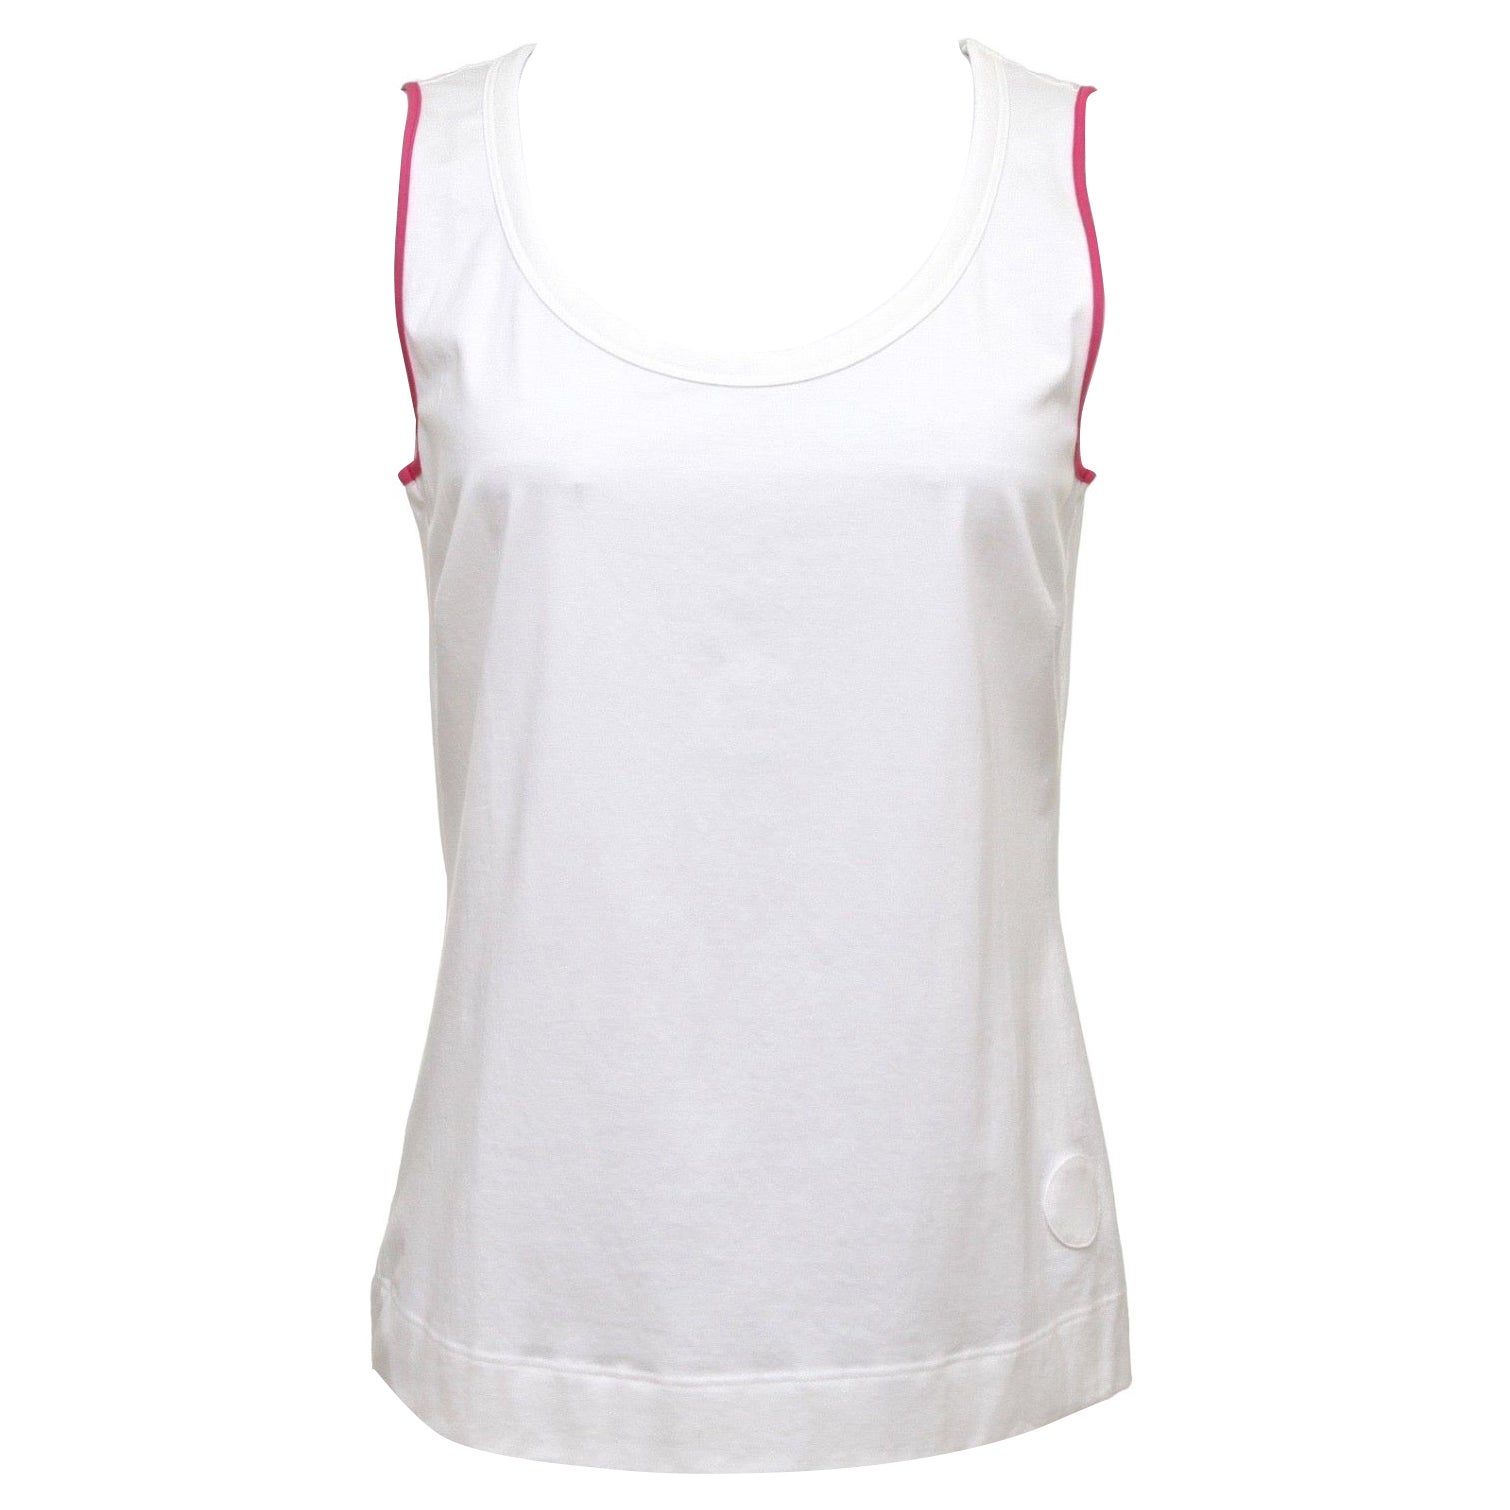 AKRIS PUNTO White Top Cotton Blouse Dress Shirt Magenta Sleeveless Shell 10